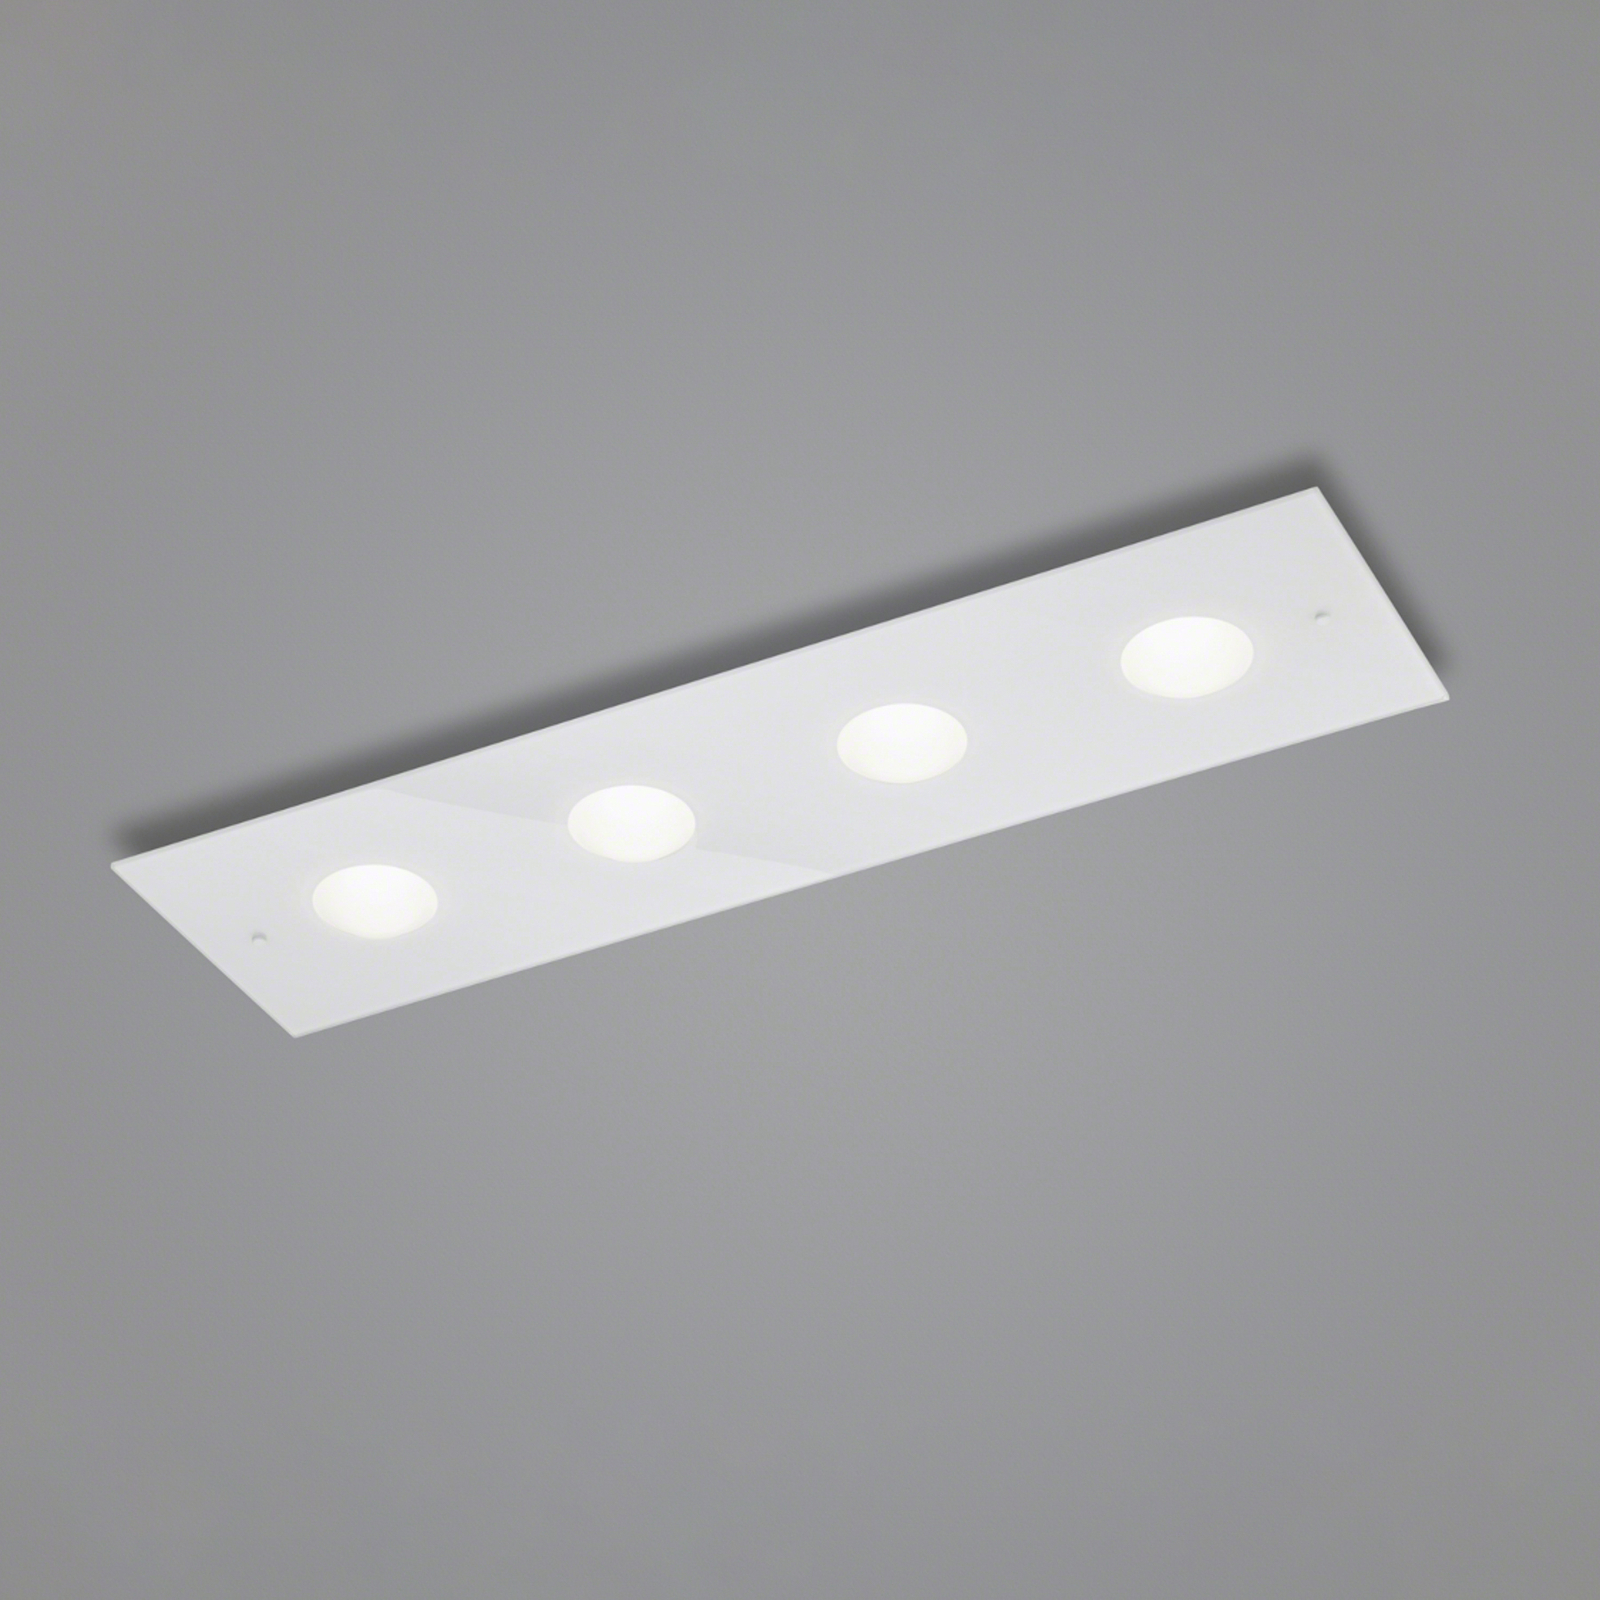 Helestra Nomi LED ceiling light 75x21 cm dim white